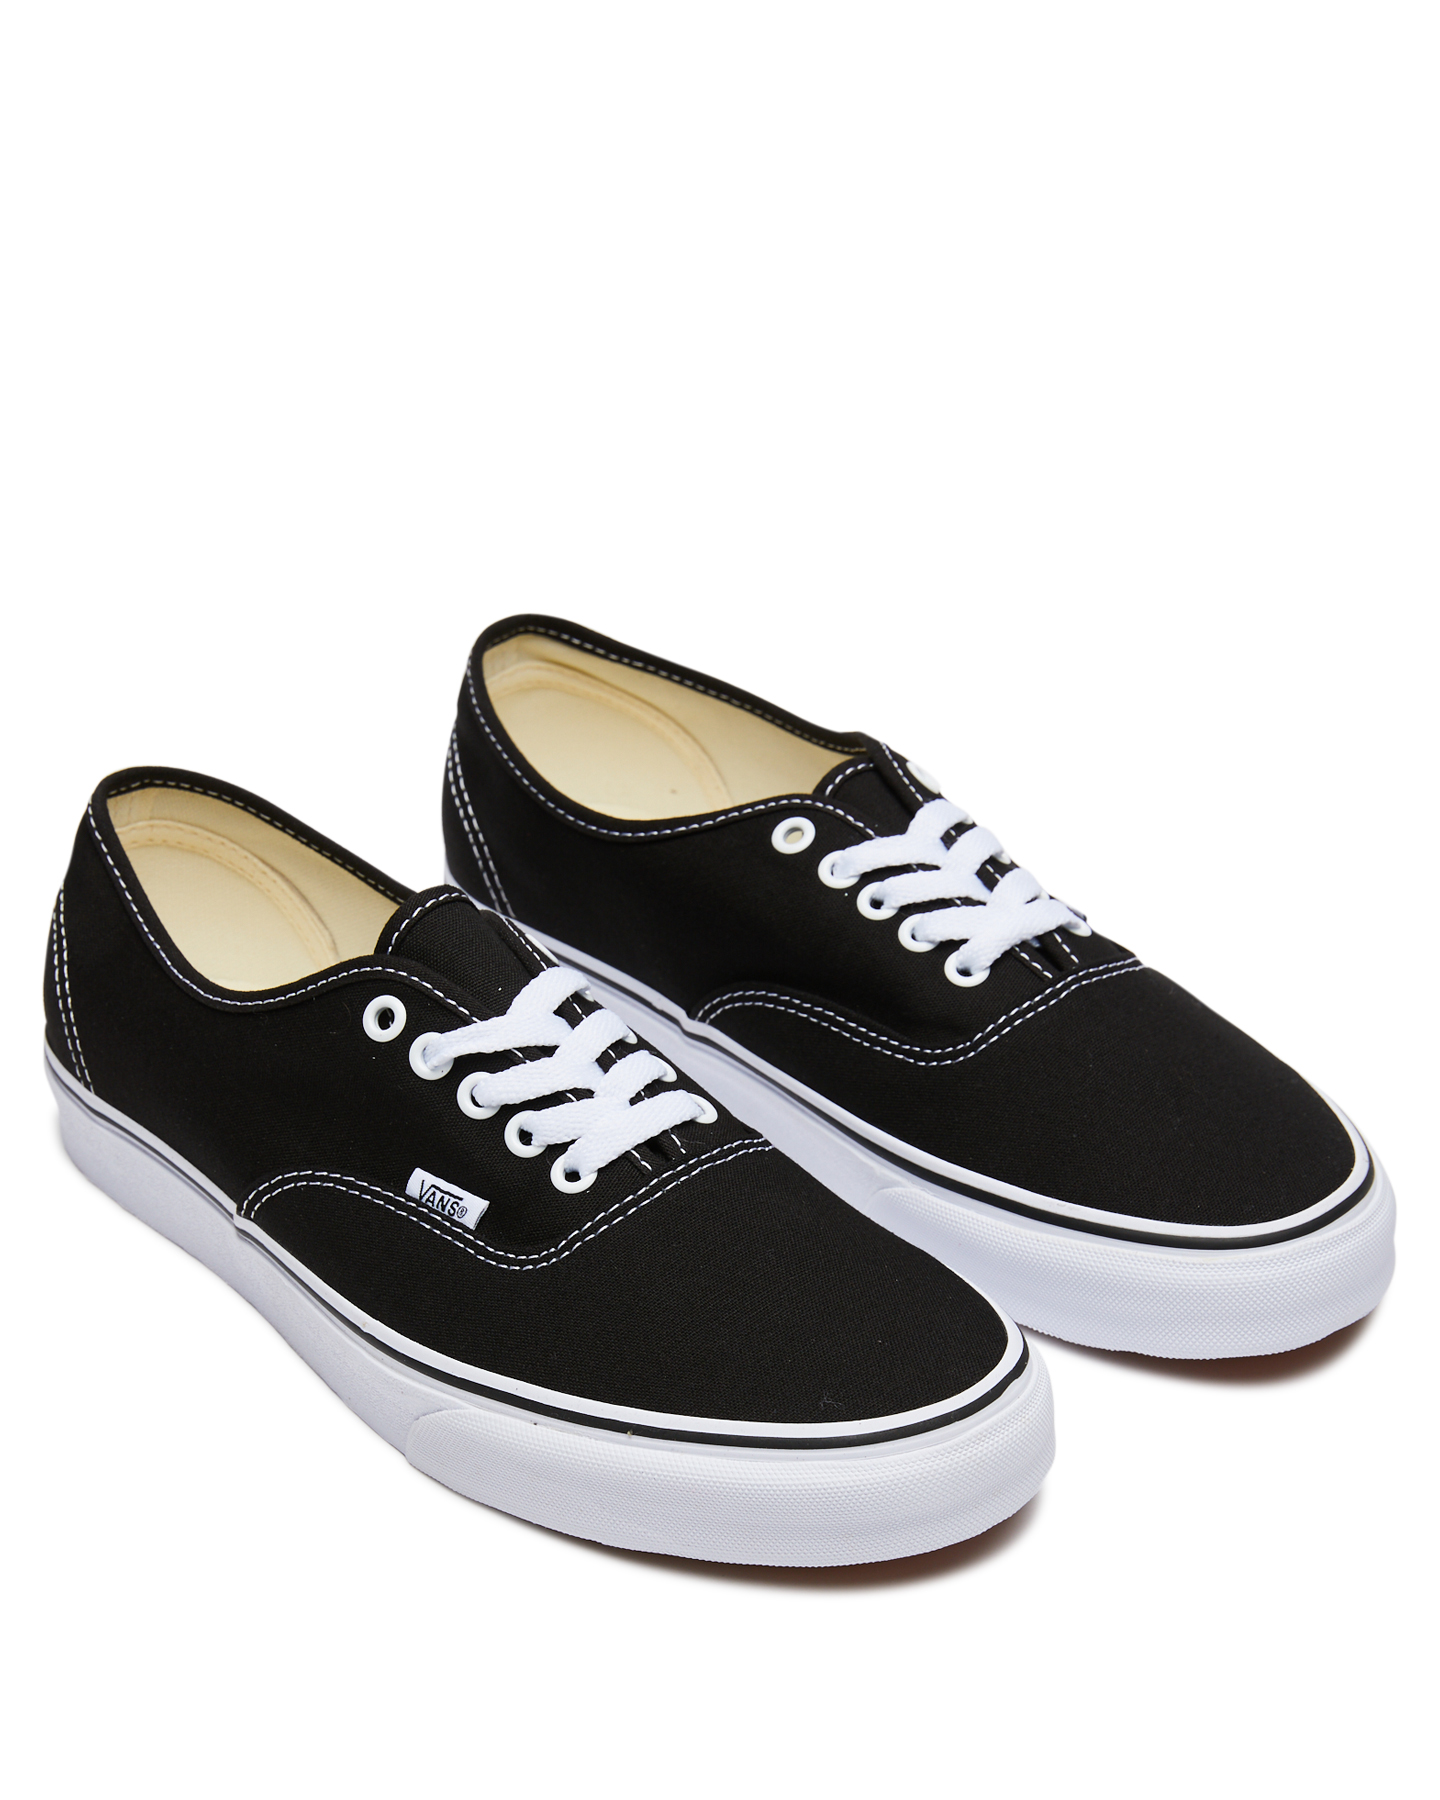 Vans Mens Authentic Shoe - Black 